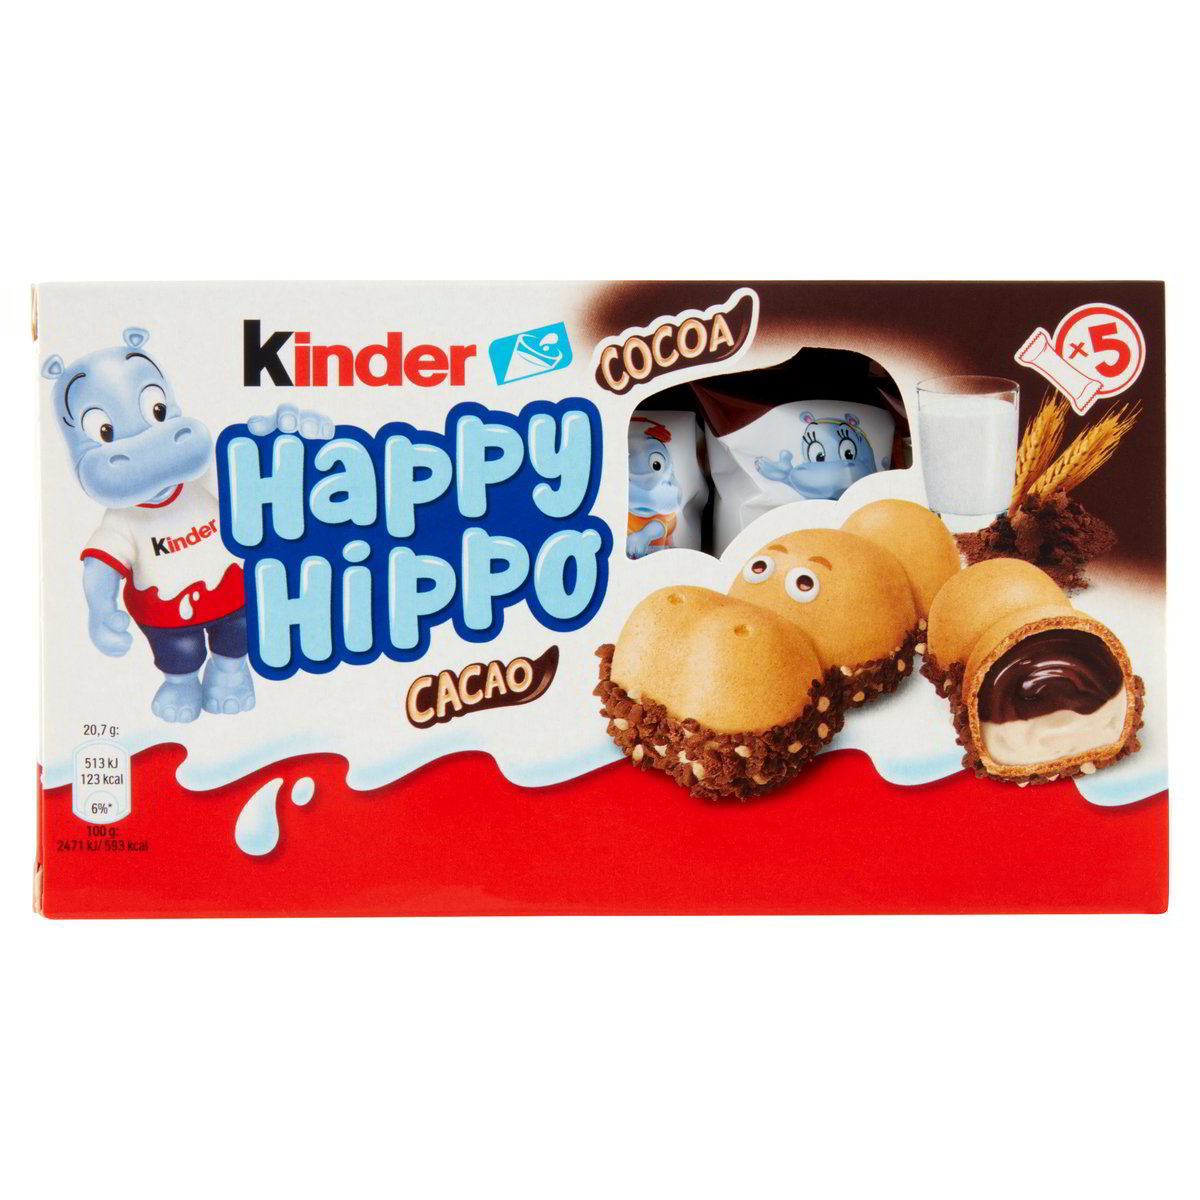 Happy Hippo Cacao